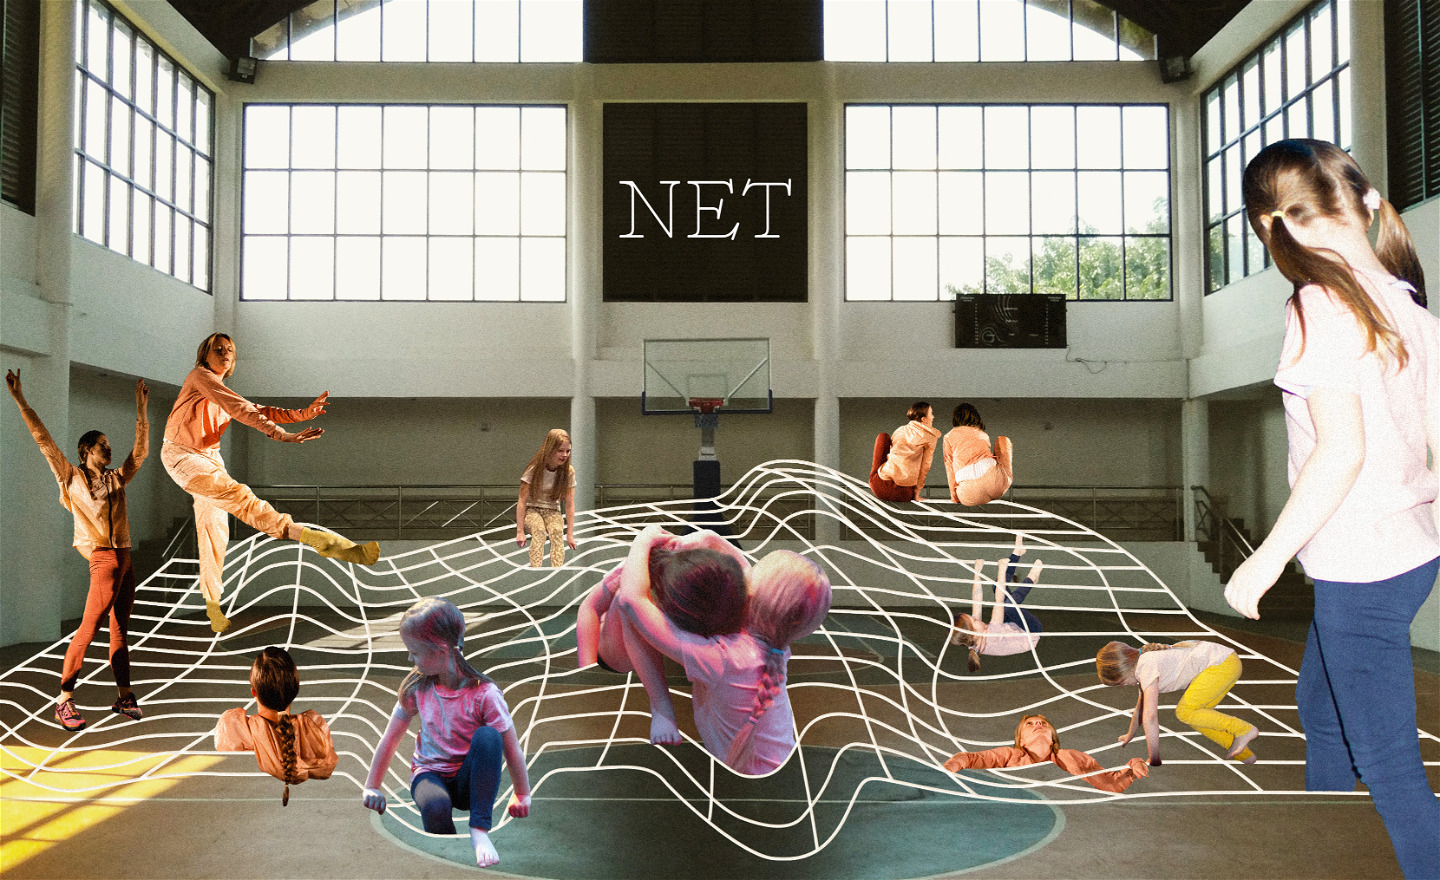 I en bild på en stor gympasal med stora fönster, syns ett stort animerat nät. Olika barn och vuxna klättrar, sitter och hänger i och under nätet.  